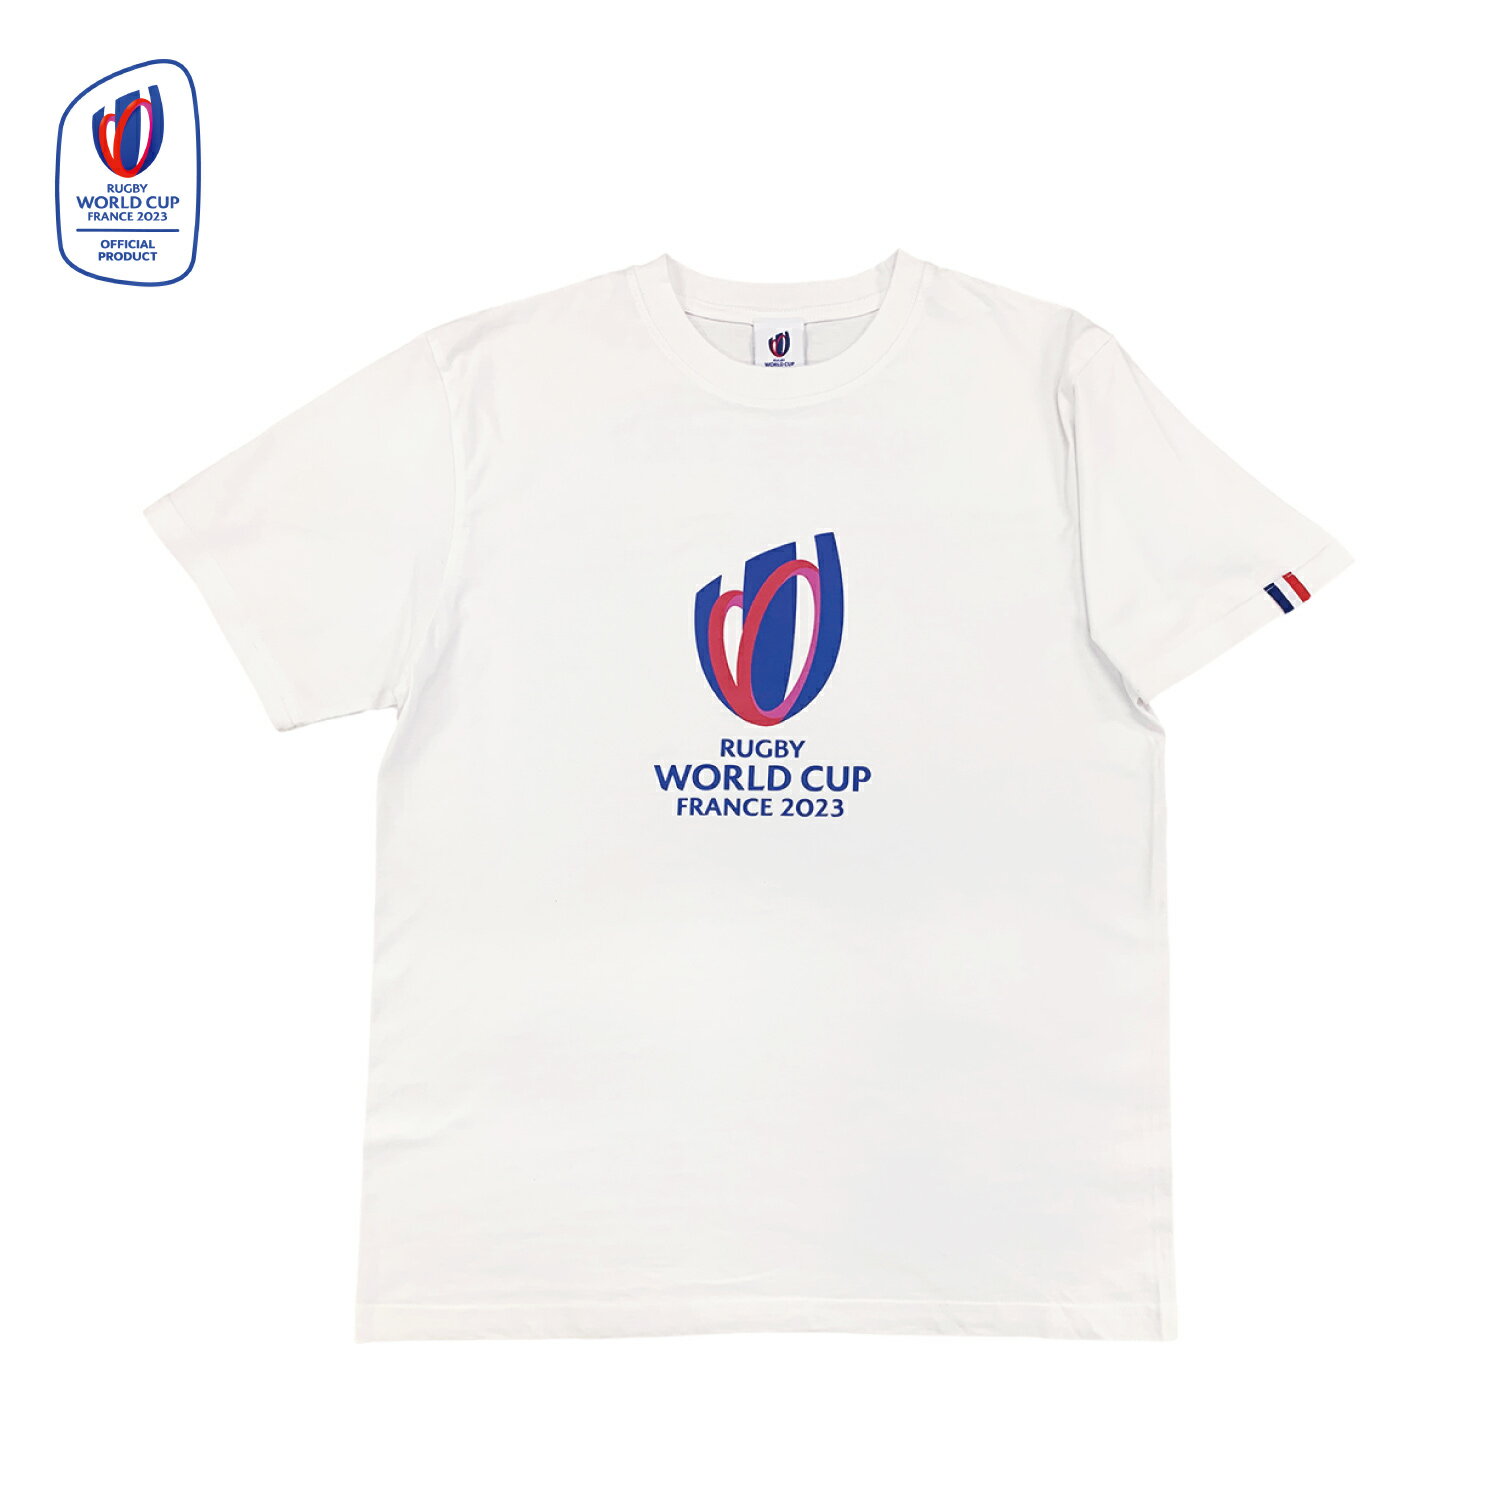 【特価商品に関しましては在庫が無くなり次第終了となります。】 Tシャツ ホワイト ラグビーワールドカップ2023 フランス大会 ●サイズ： S M L XL ●綿100% (抗菌・防臭加工) ※特価品となりますので、お客様都合の交換や返品はお受けすることが出来かねます。 ご了承のほどよろしくお願います。 TM&Rugby World Cup Limited 2023